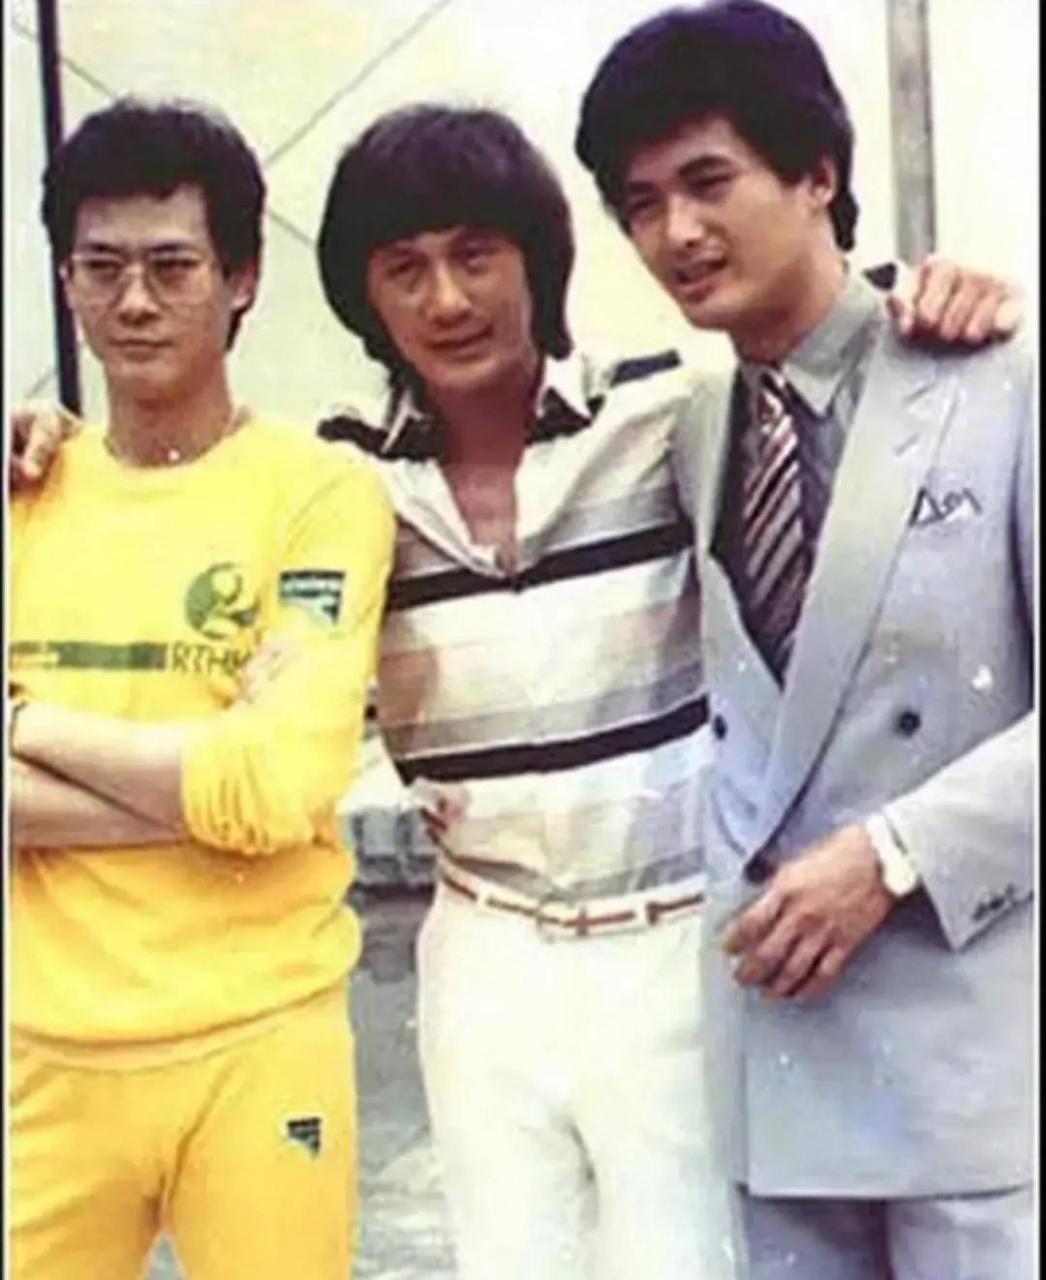 上世纪80年代初,三位炙手可热香港明星的合影